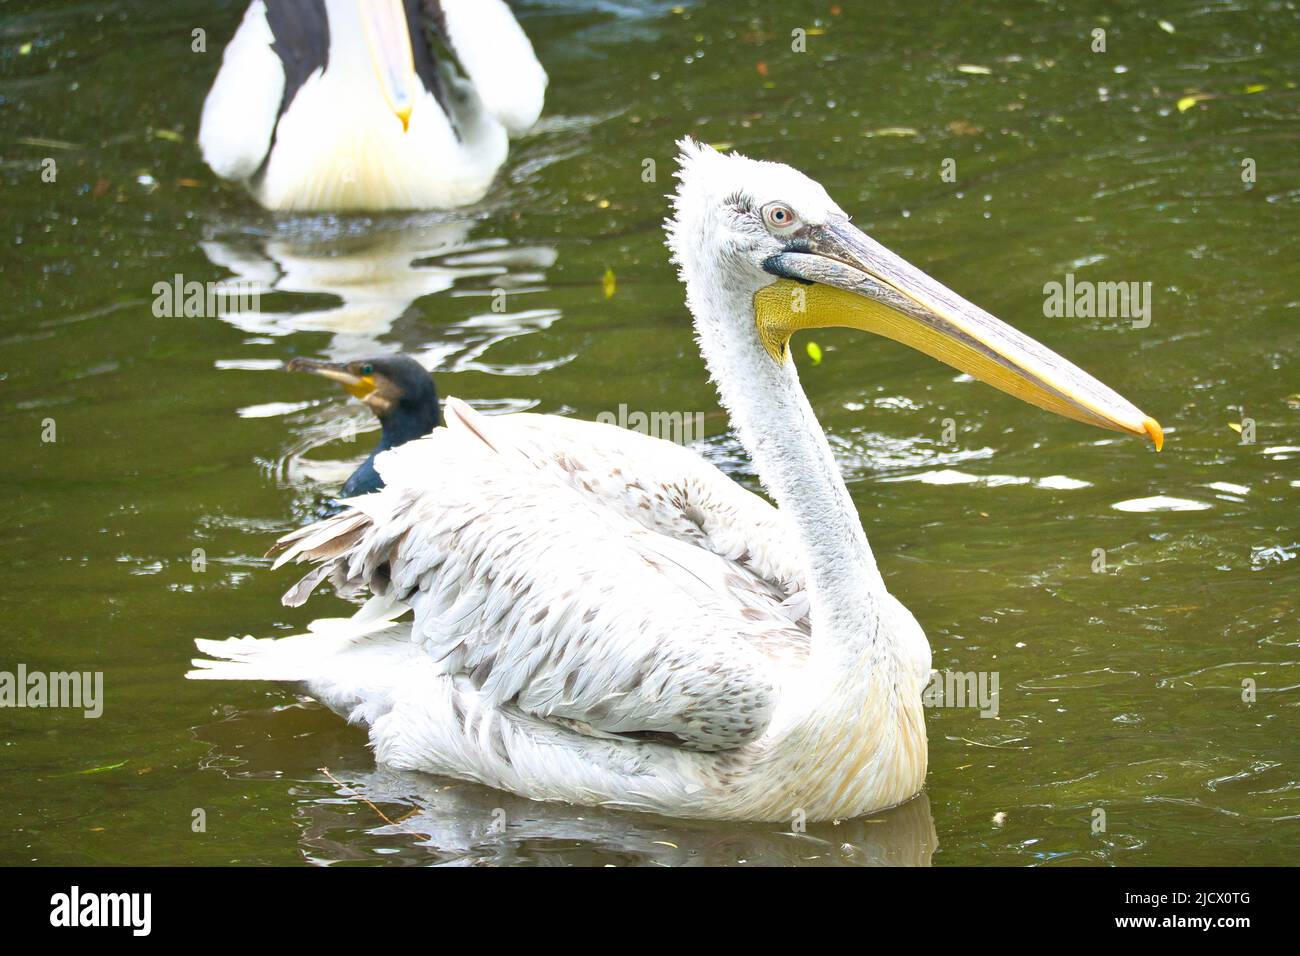 Pelikan schwimmt im Wasser. Weißes Gefieder, großer Schnabel, in einem großen Meeresvögel. Tierfoto Stockfoto